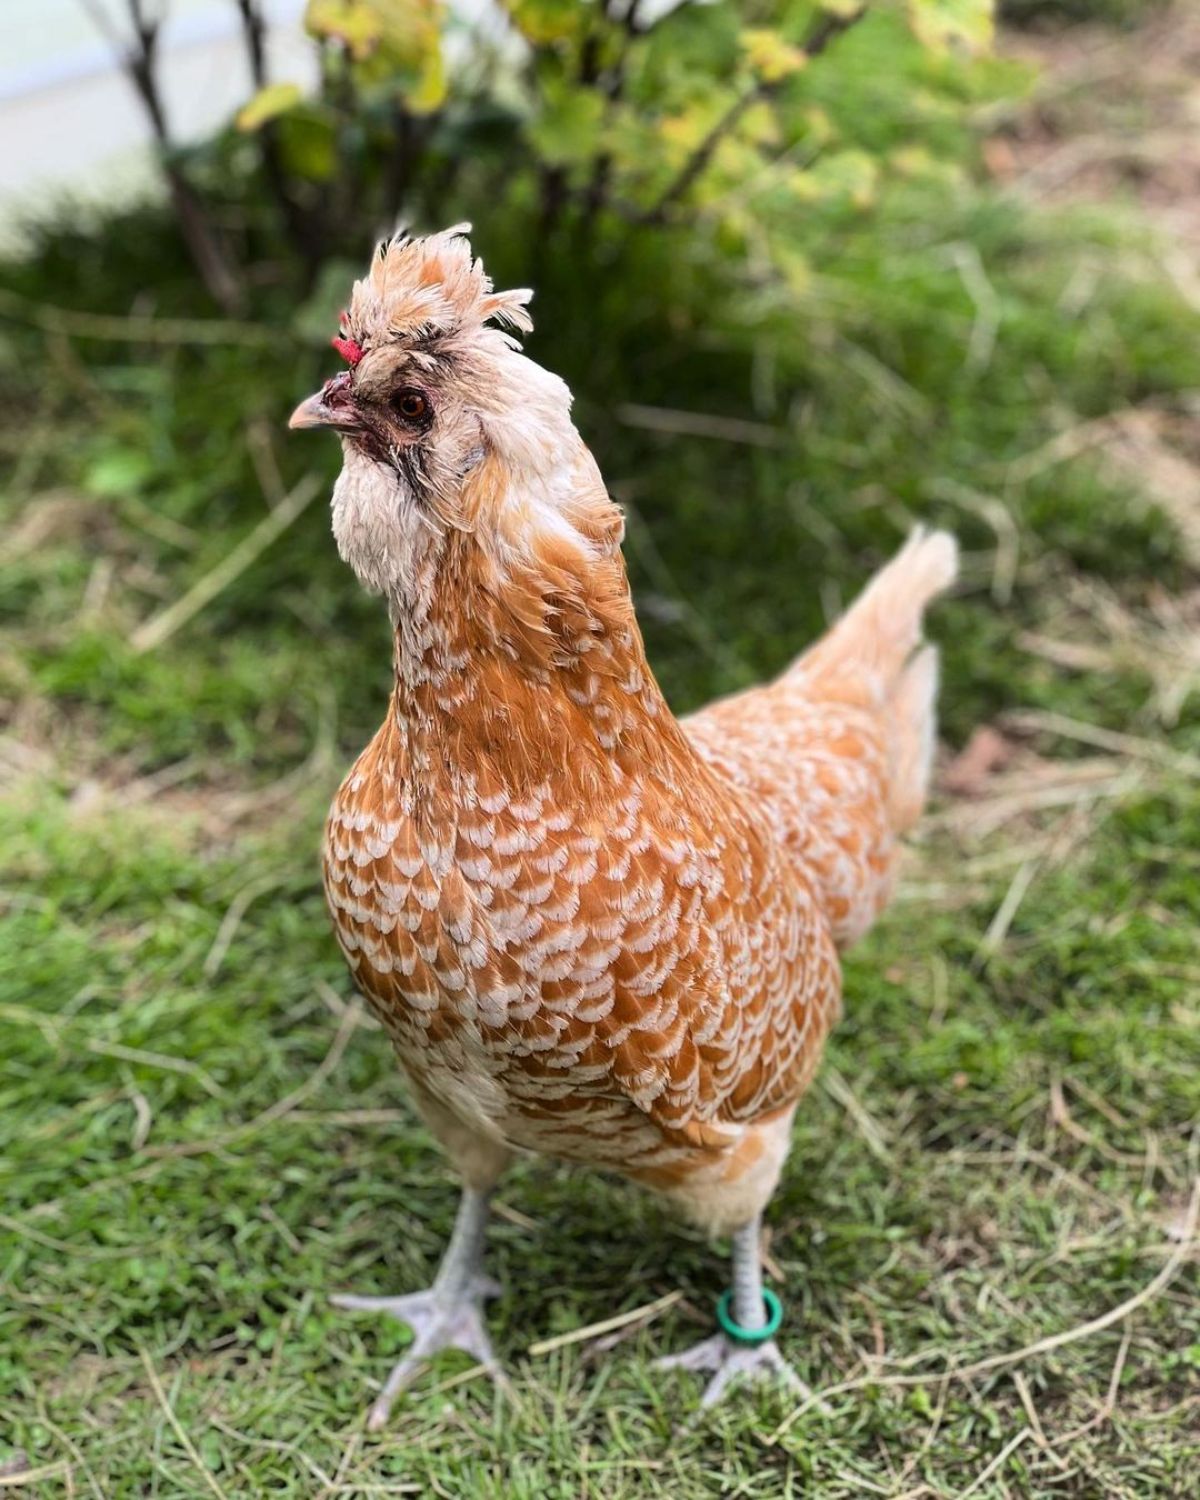 An adorable golden Brabanter chicken in a backyard.